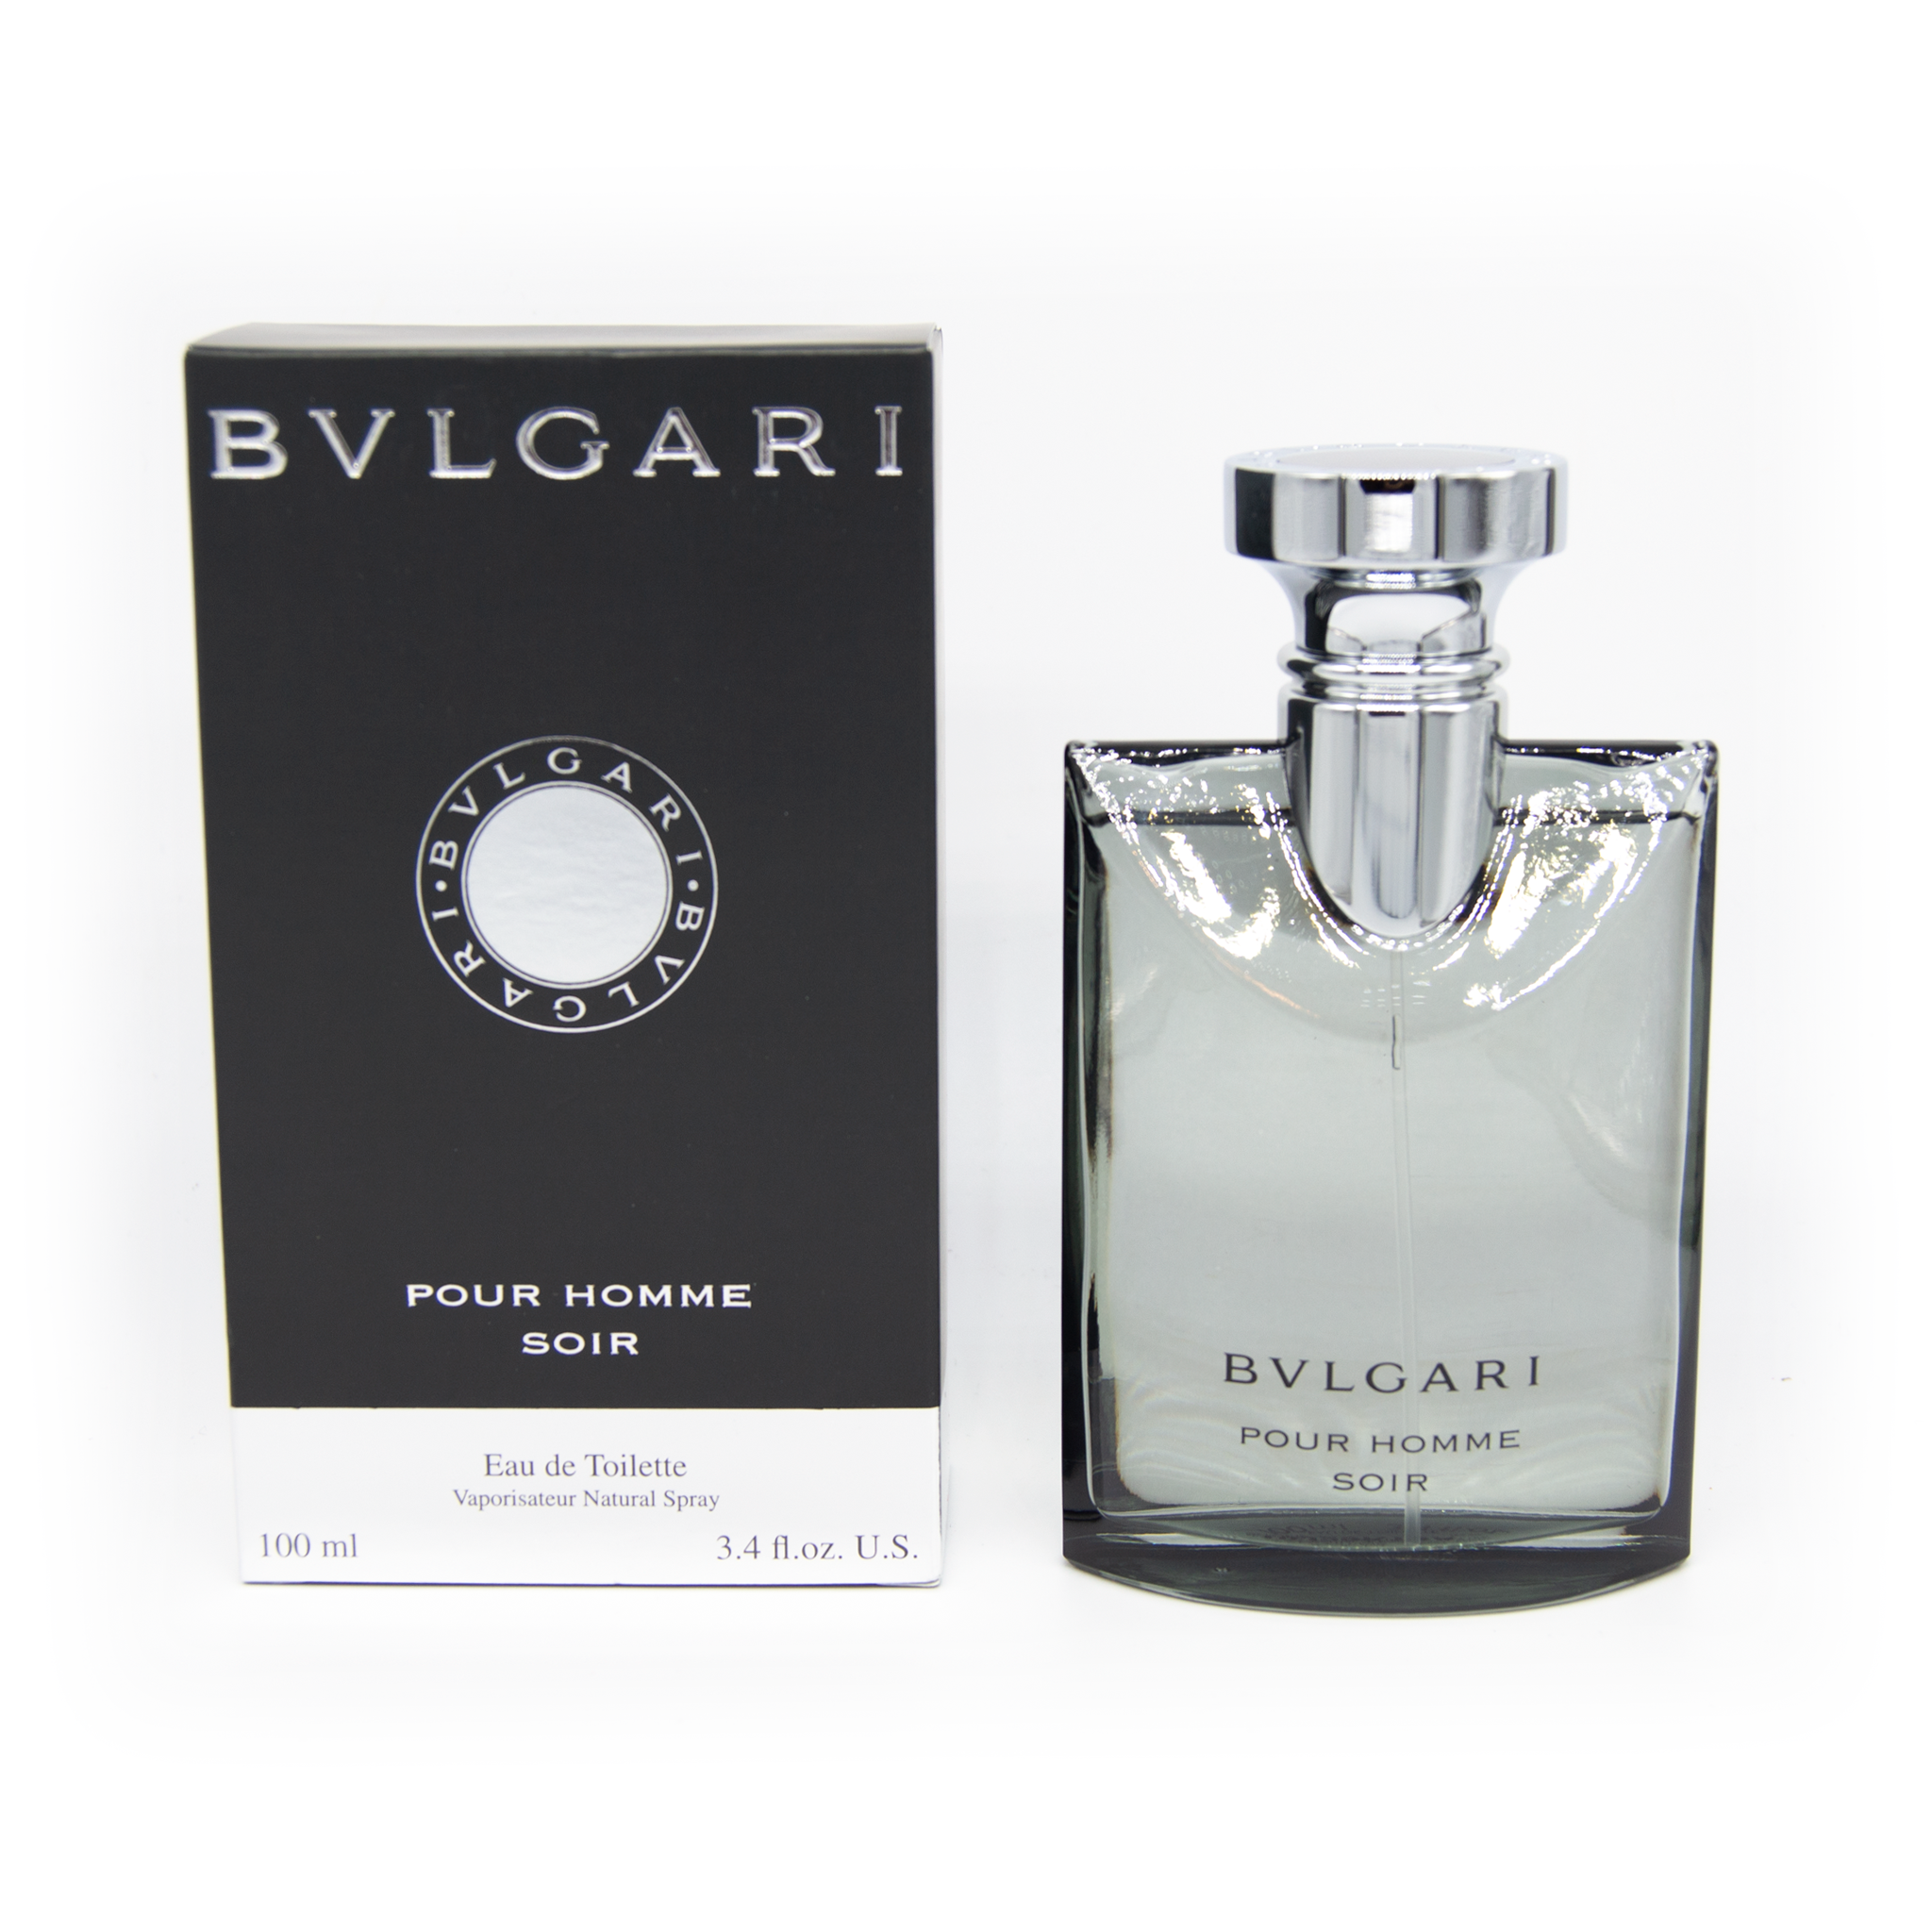 Bvlgari Pour Homme Soir – Essence Fragrances Online